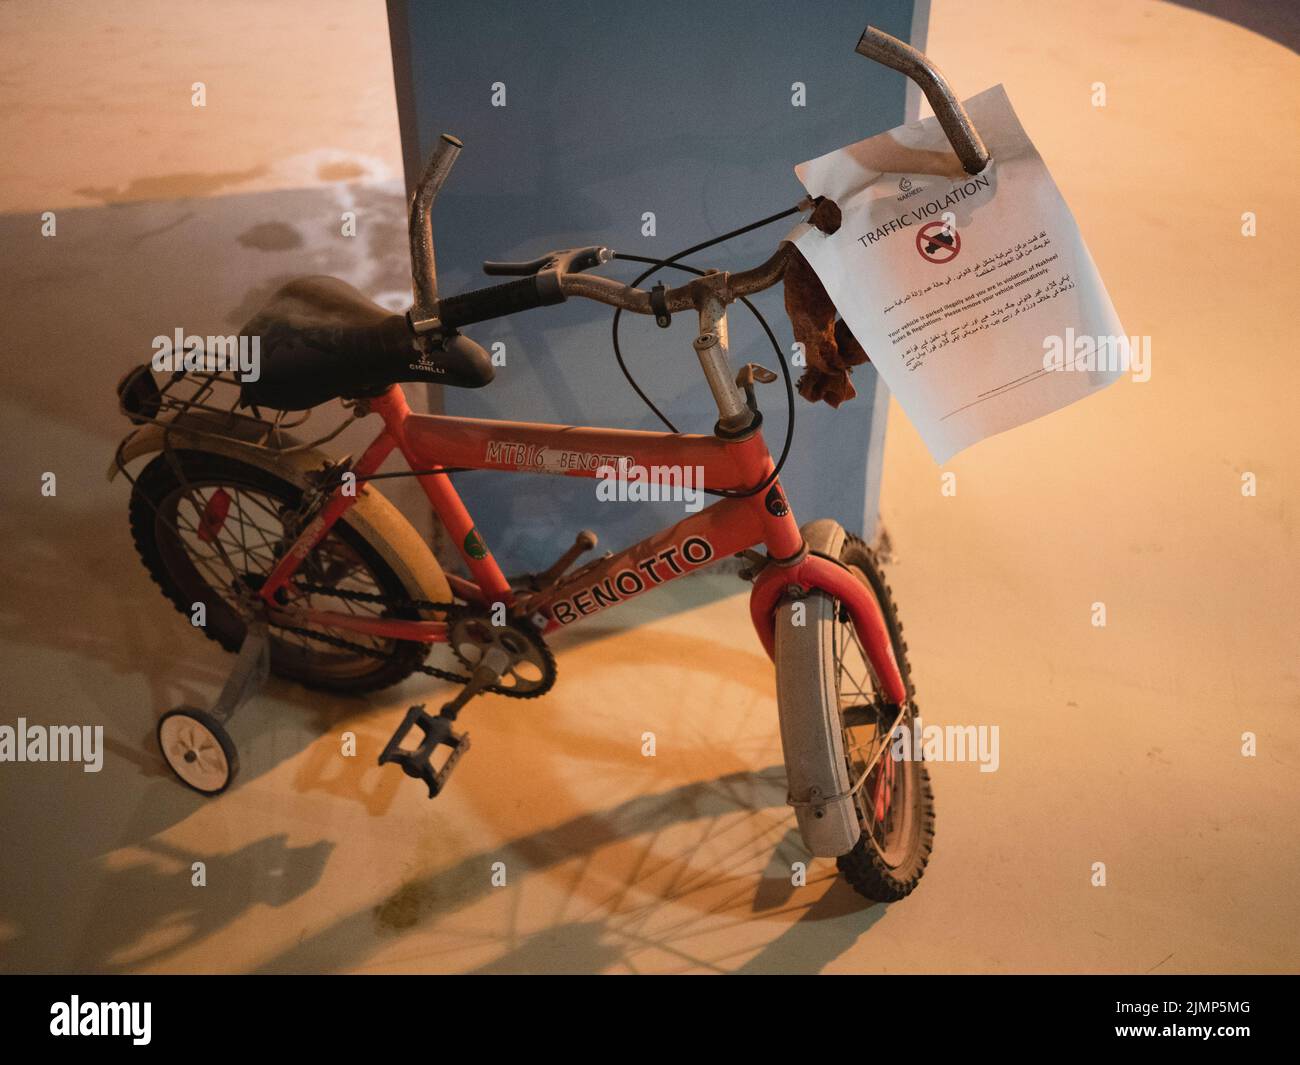 Bicicleta infantil con estabilizadores y aviso de infracción de tráfico adjunto a manillar, Emiratos Árabes Unidos, Dubai, Emiratos Árabes Unidos, Foto de stock